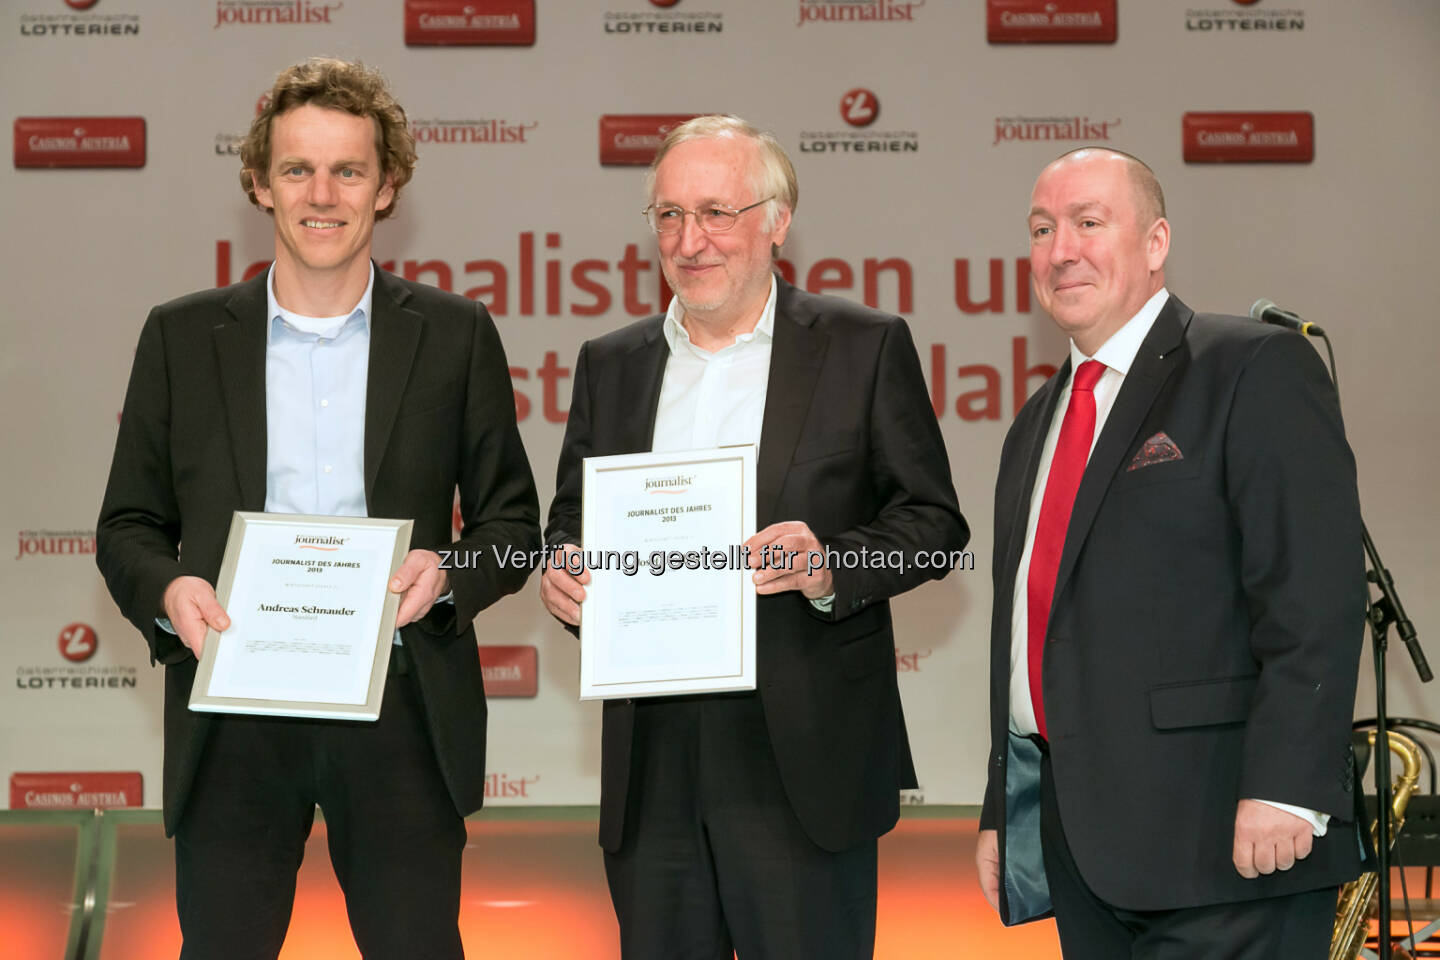 Andreas Schnauder (Standard), Josef Urschitz (Presse), Georg Taitl (“Der Österreichische Journalist”)